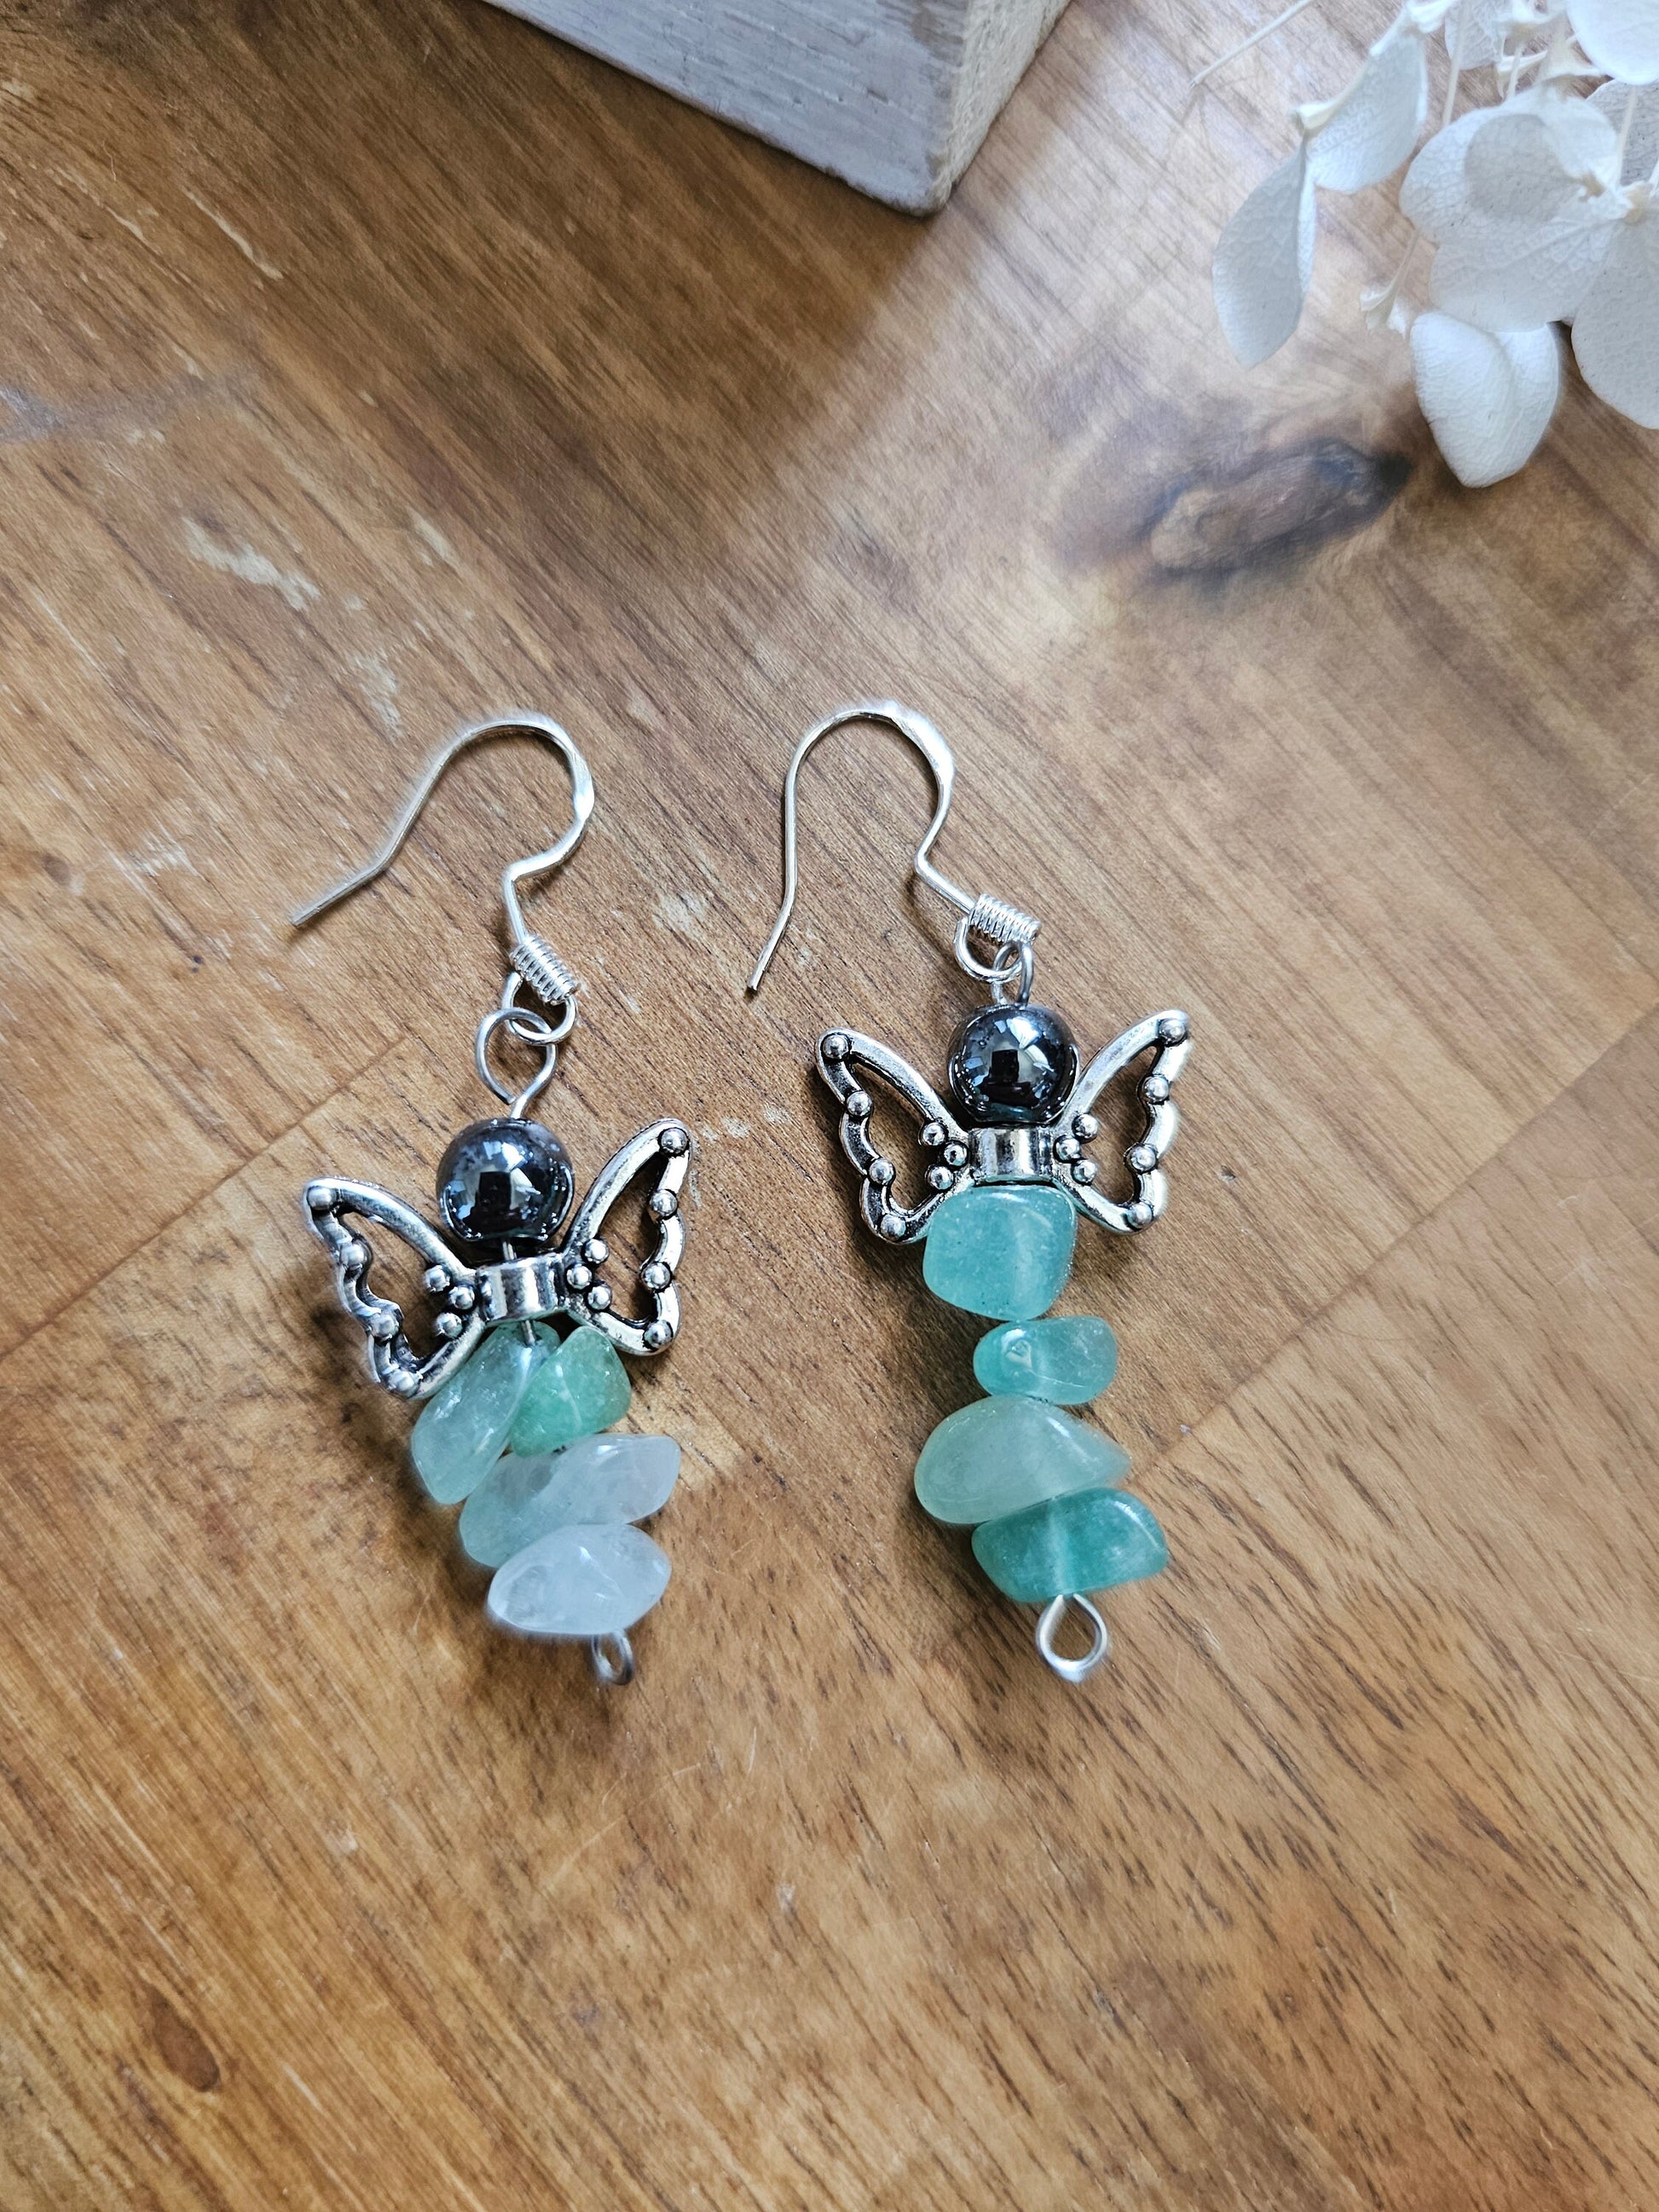 Angel / Fairy Crystal earrings - Mixed gemstones